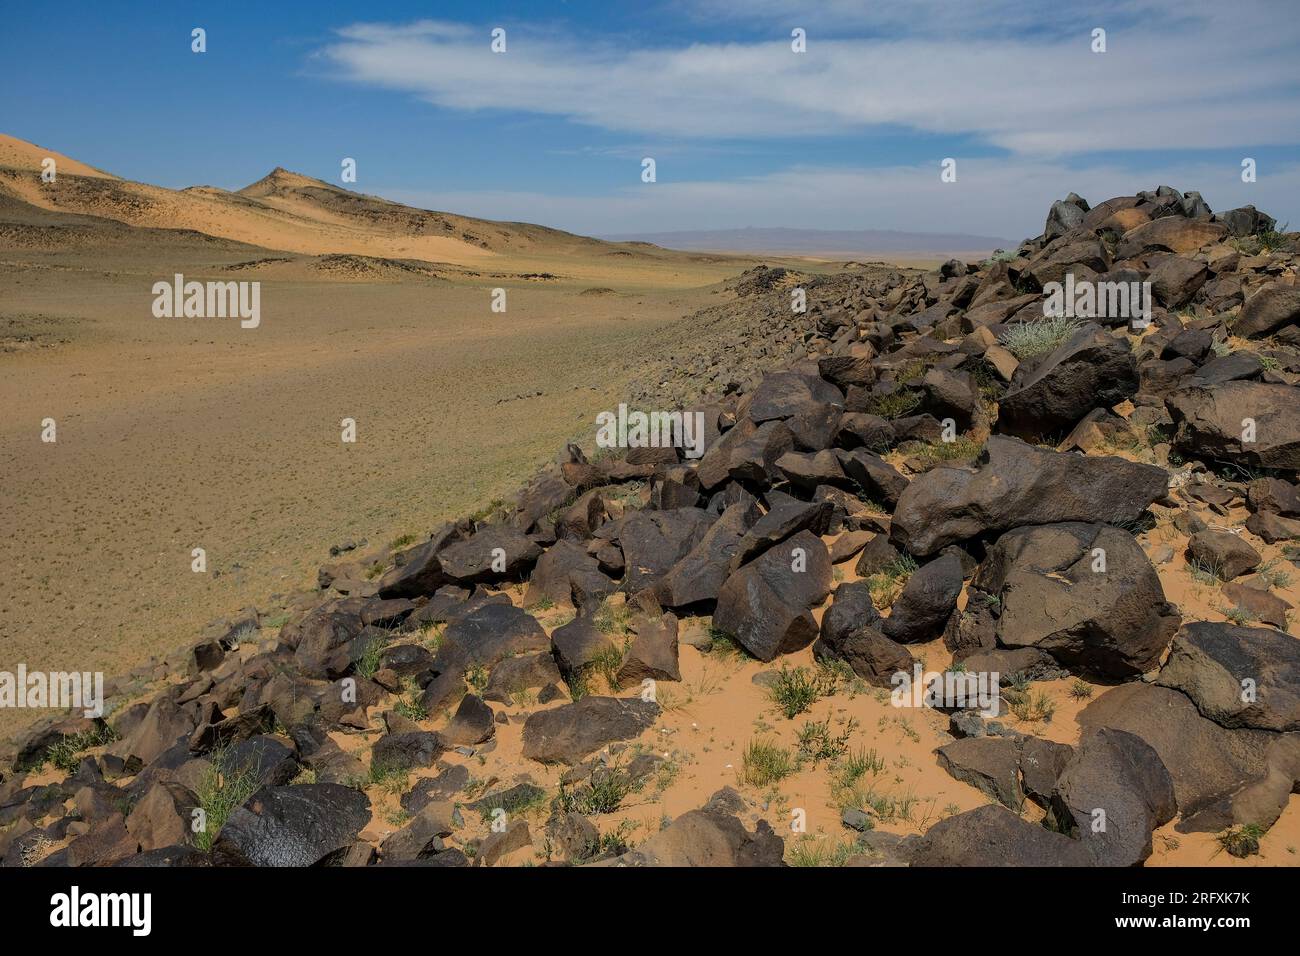 Khongor Sand Dunes in the Gobi Desert in Mongolia. Stock Photo